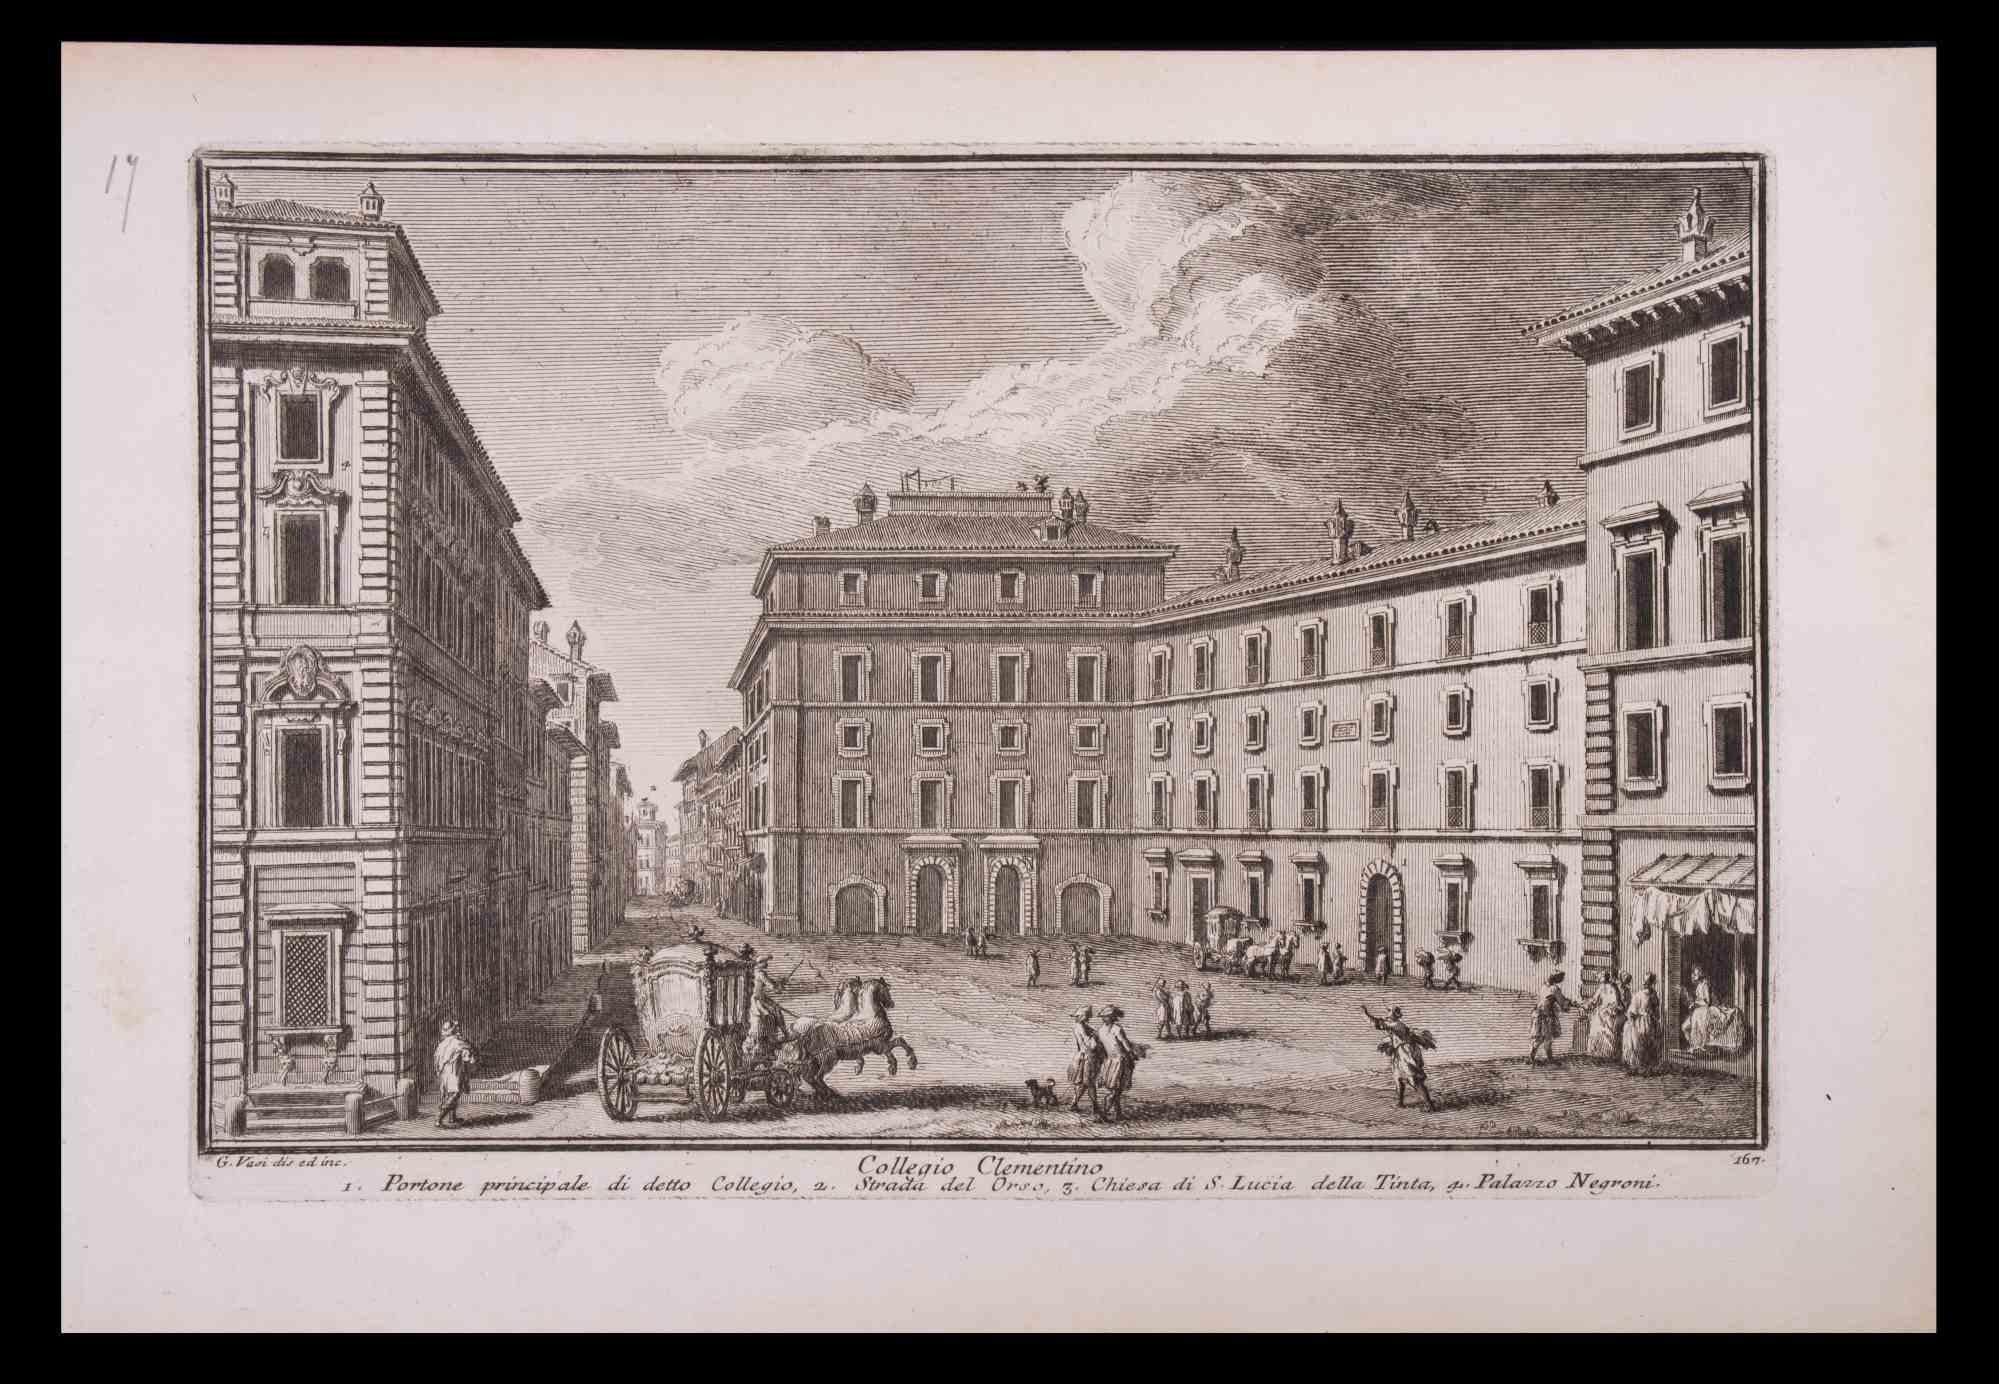 Collegio Clementino ist eine Original-Schwarz-Weiß-Radierung aus dem späten 18. Jahrhundert von Giuseppe Vasi.

Die schöne Radierung zeigt einen Blick auf Rom.

Signiert und betitelt am unteren Rand der Platte. Auf der unteren Seite betitelt.

Gute